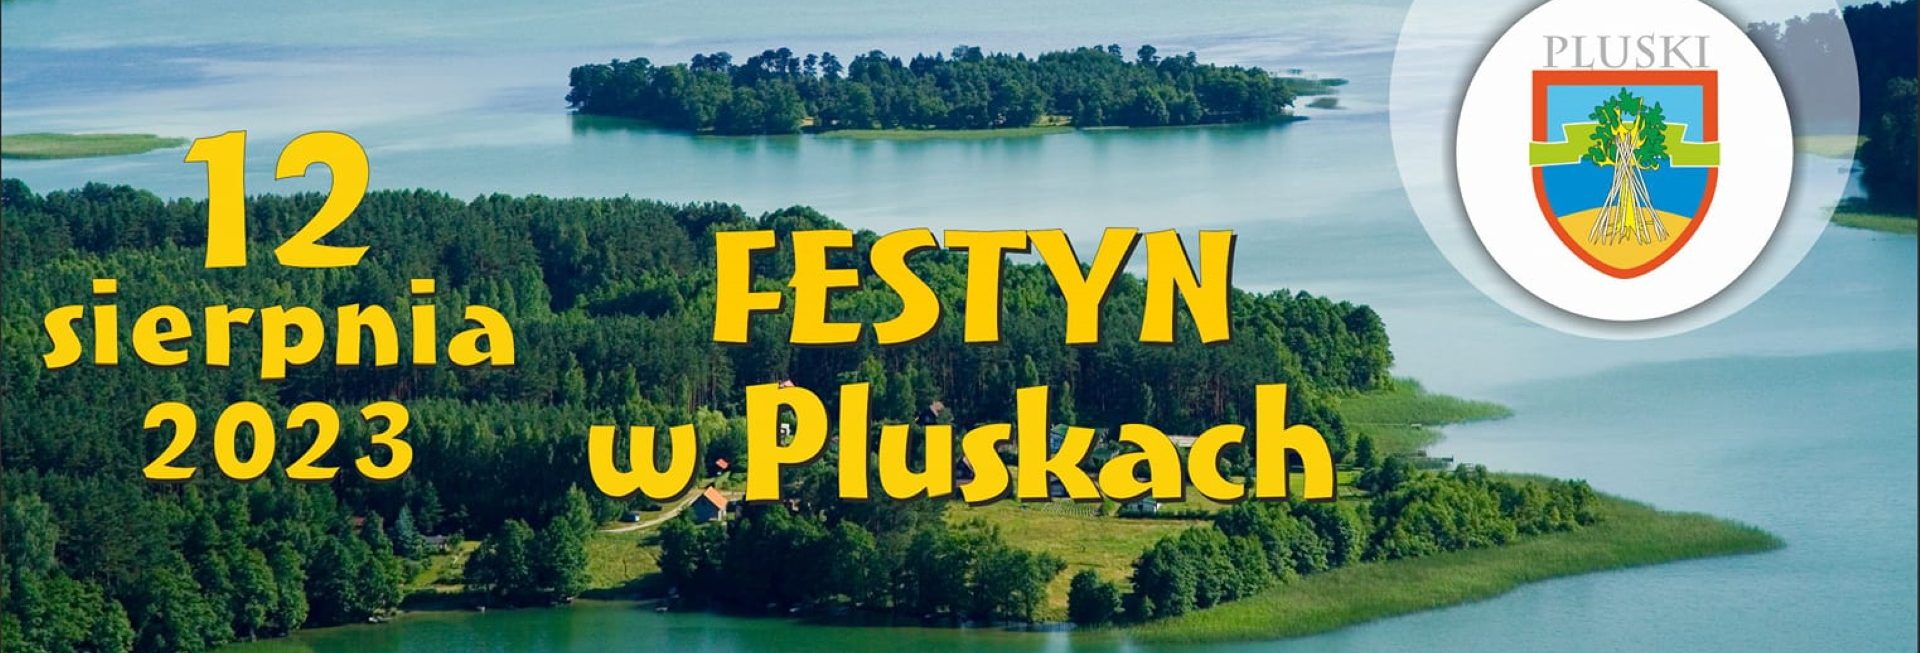 Plakat zapraszający w sobotę 12 sierpnia 2023 r. do miejscowości Pluski w gminie Stawiguda na Festyn w Pluskach 2023.